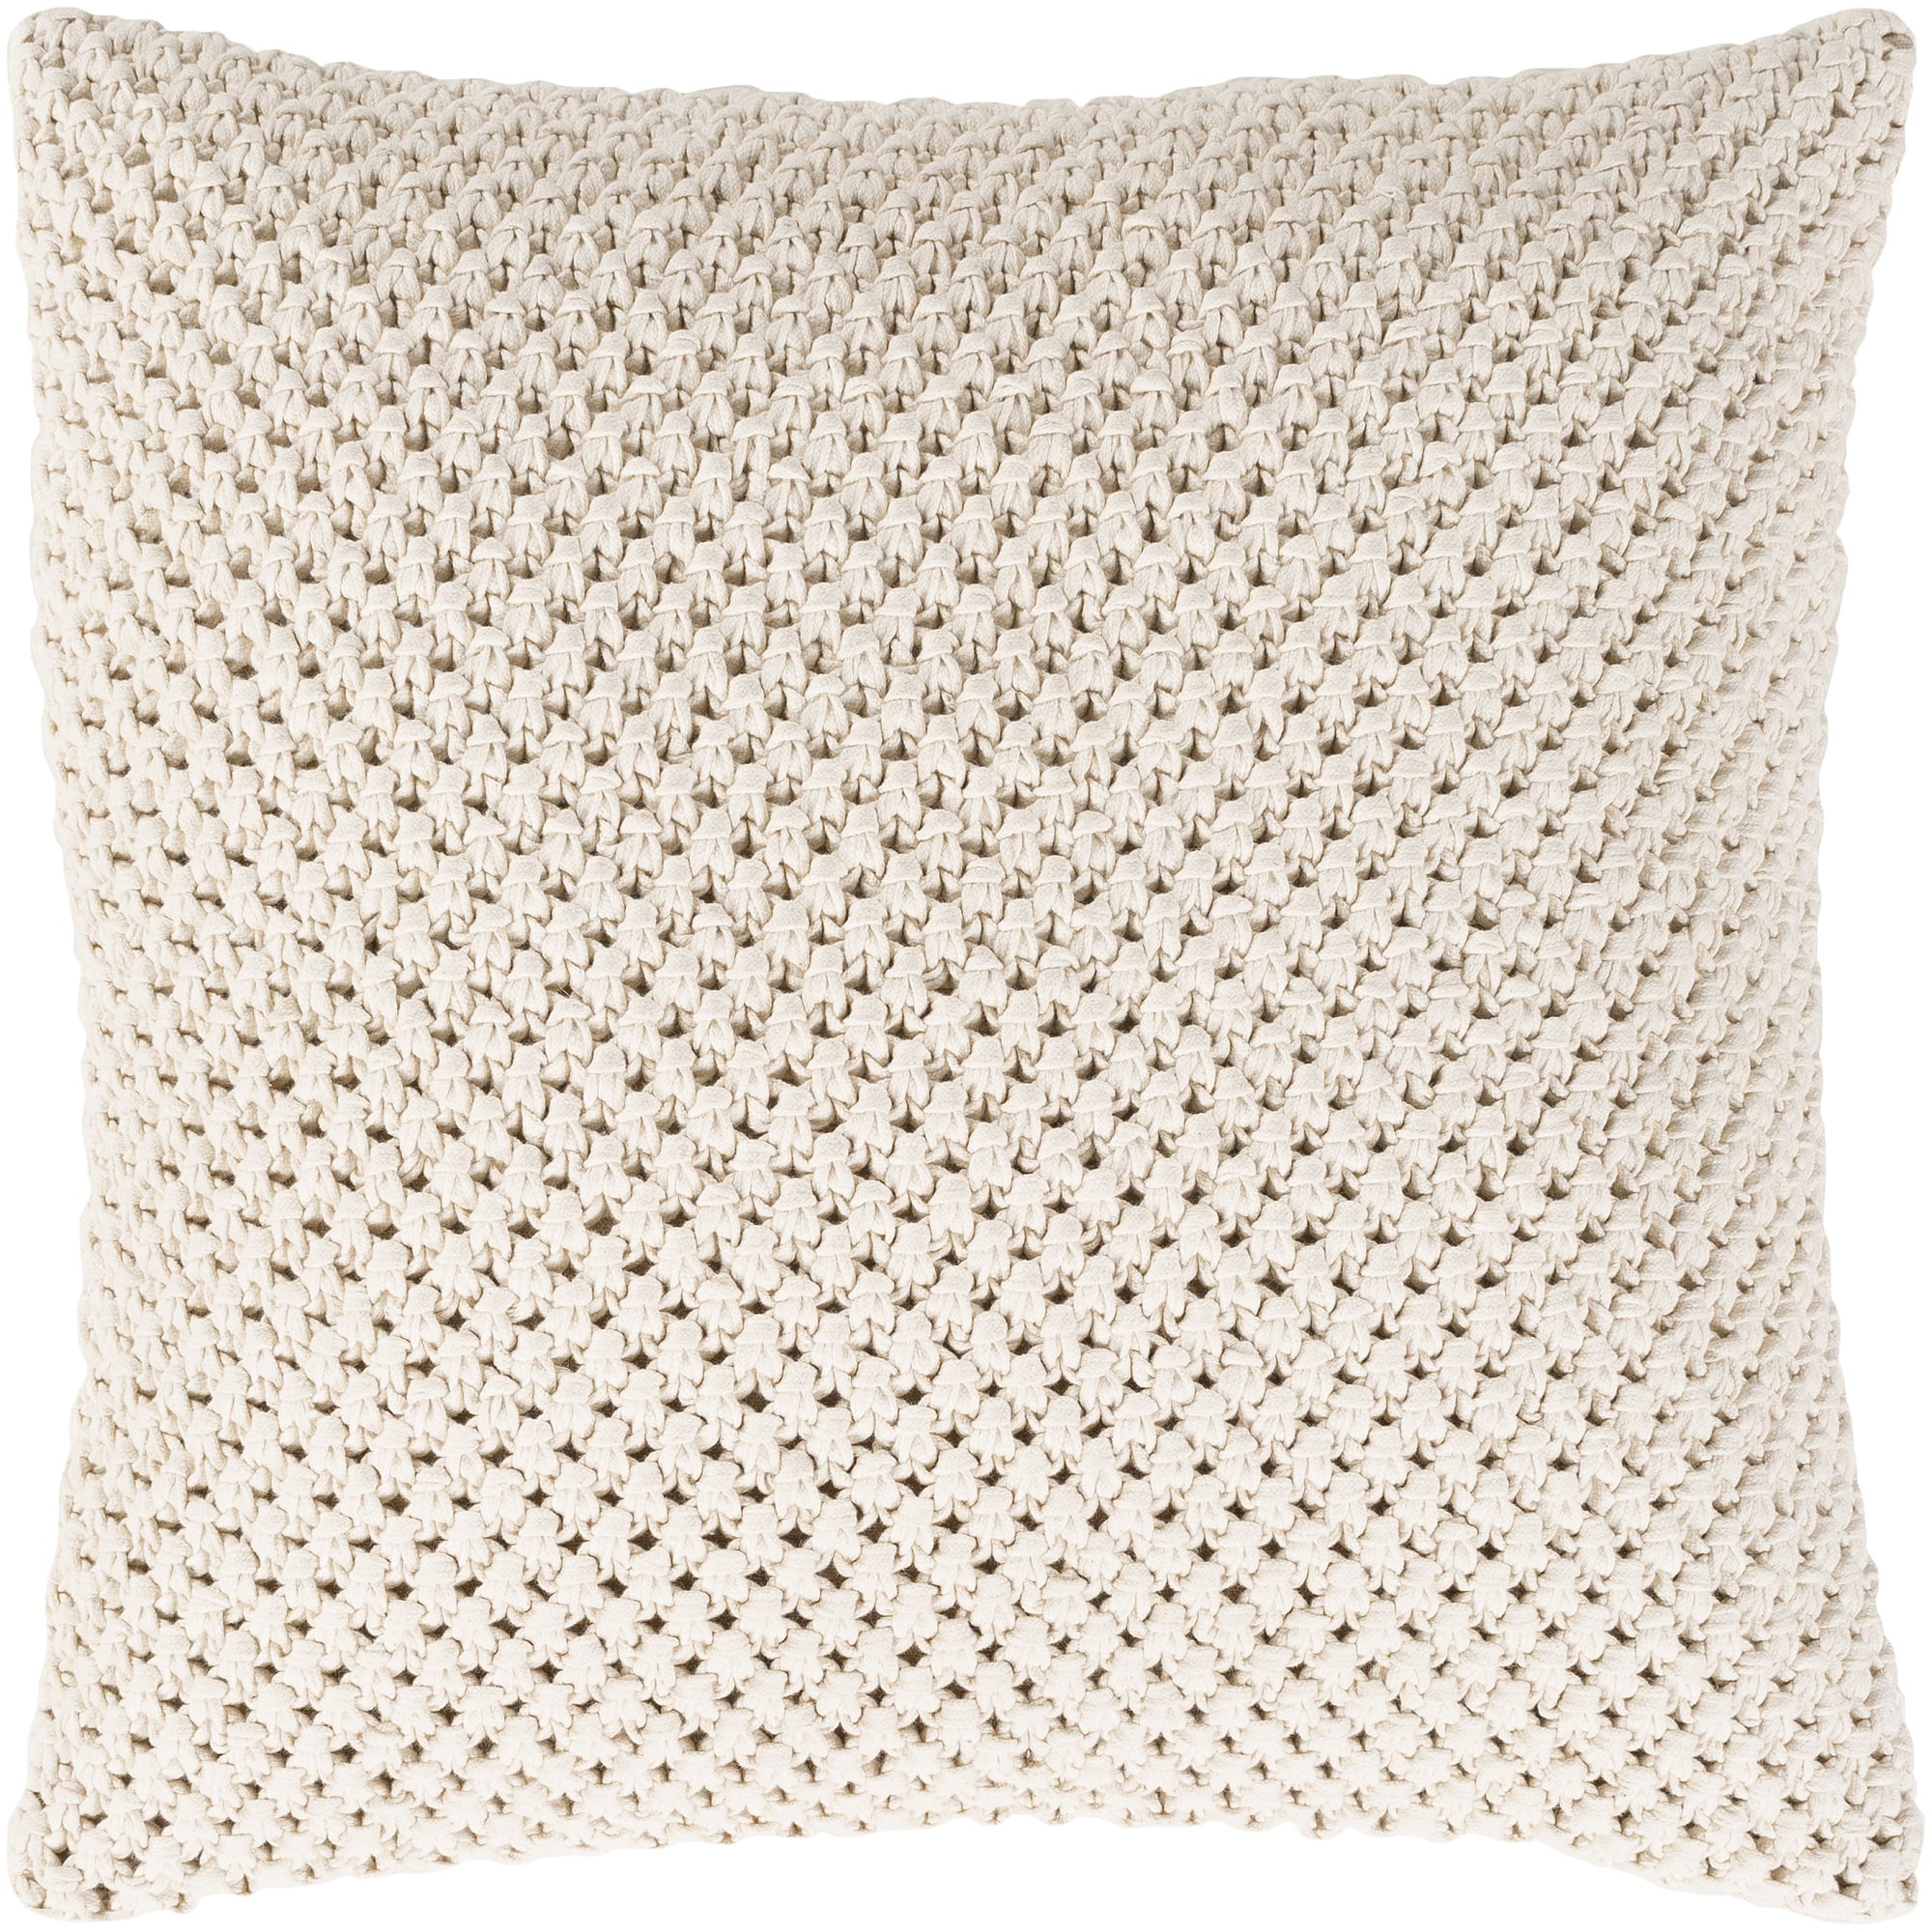 Lollipop Ribbed 100% Cotton European Cushion Cover 60 x 60cm 